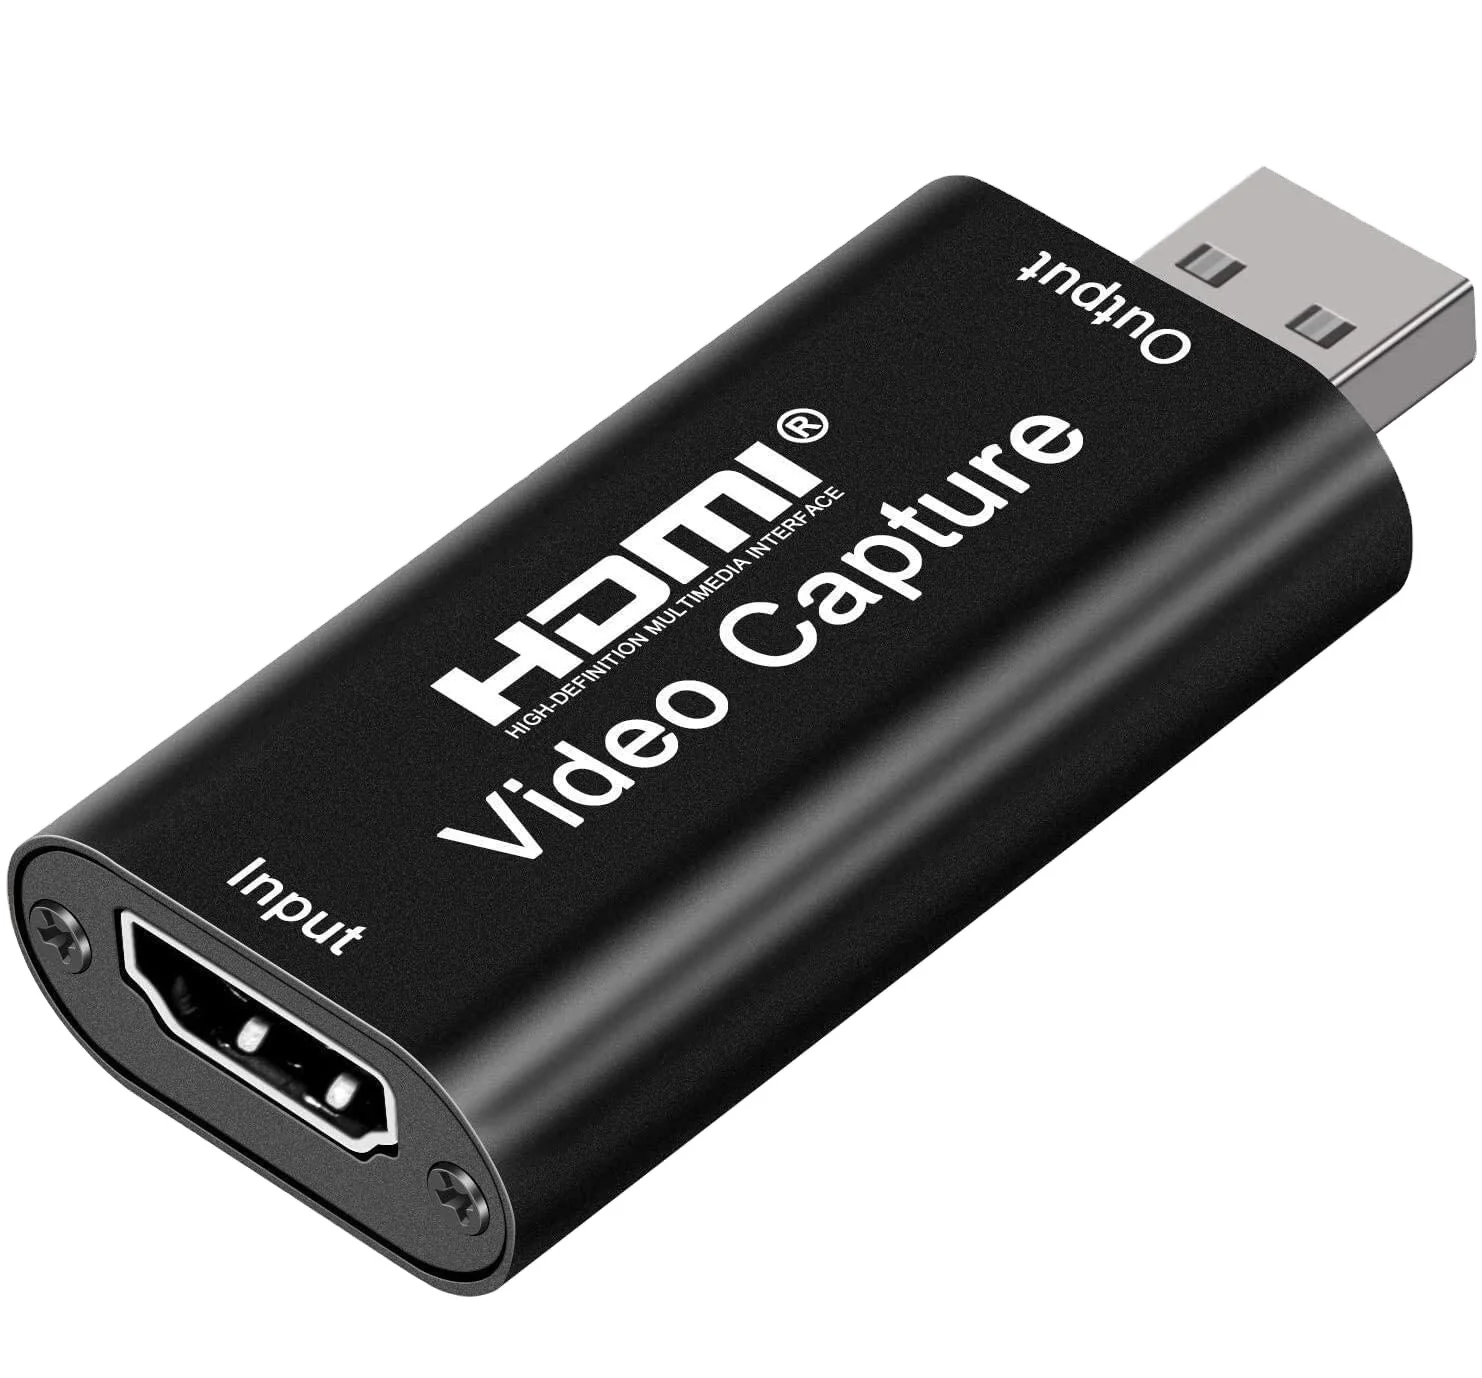 HDCAP-20 001 HDMI Capture.jpg